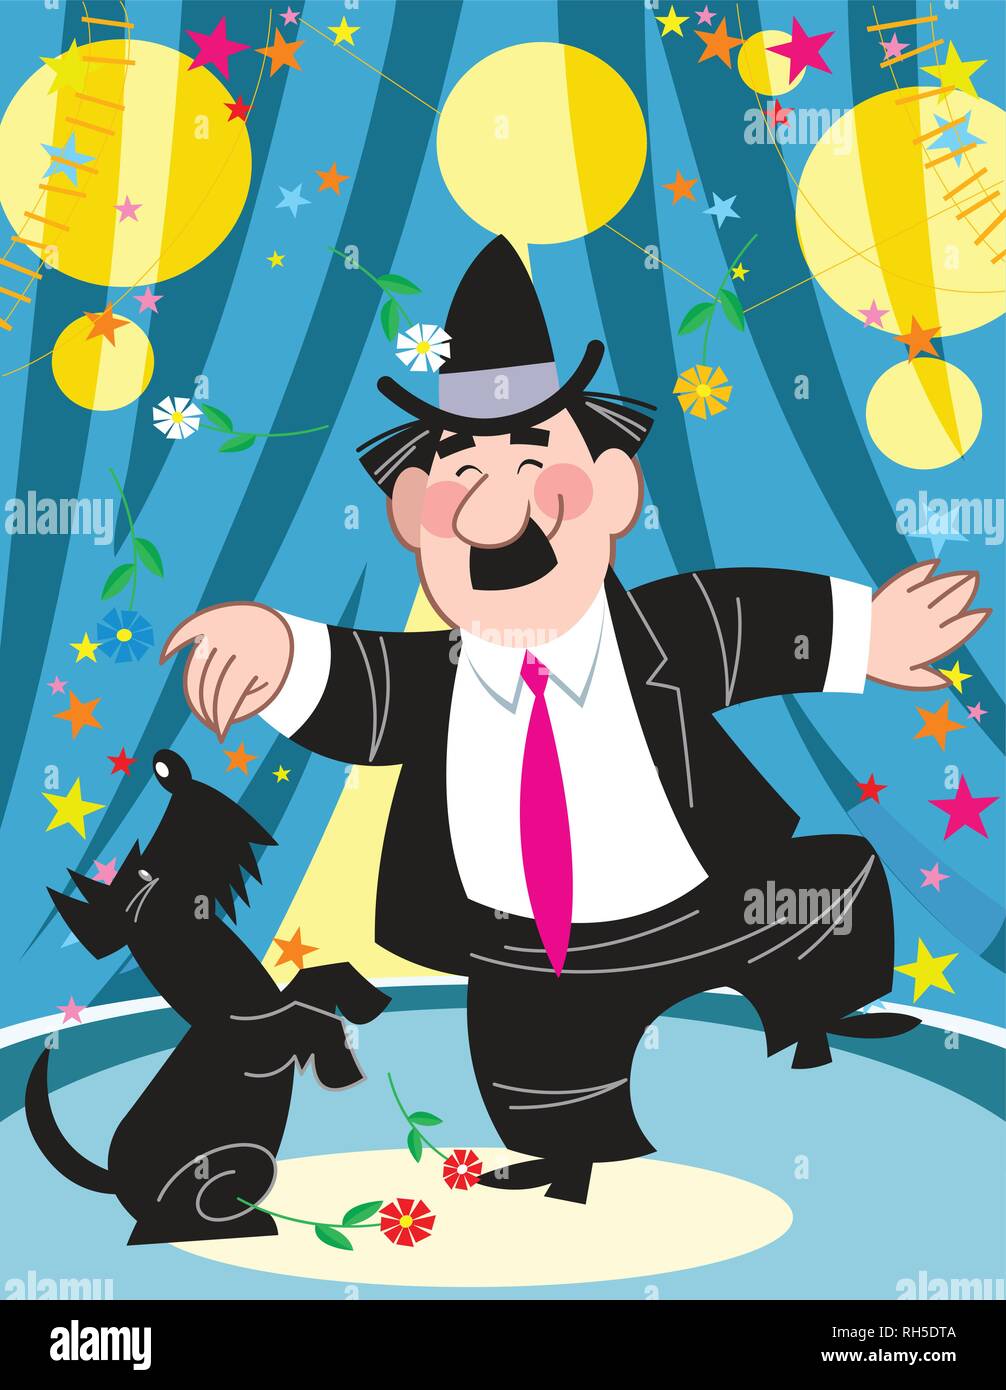 L'illustration montre un clown dans un costume noir avec un chien noir dans l'arène du cirque. Illustration faite sur des calques distincts dans un style de dessin animé. Illustration de Vecteur